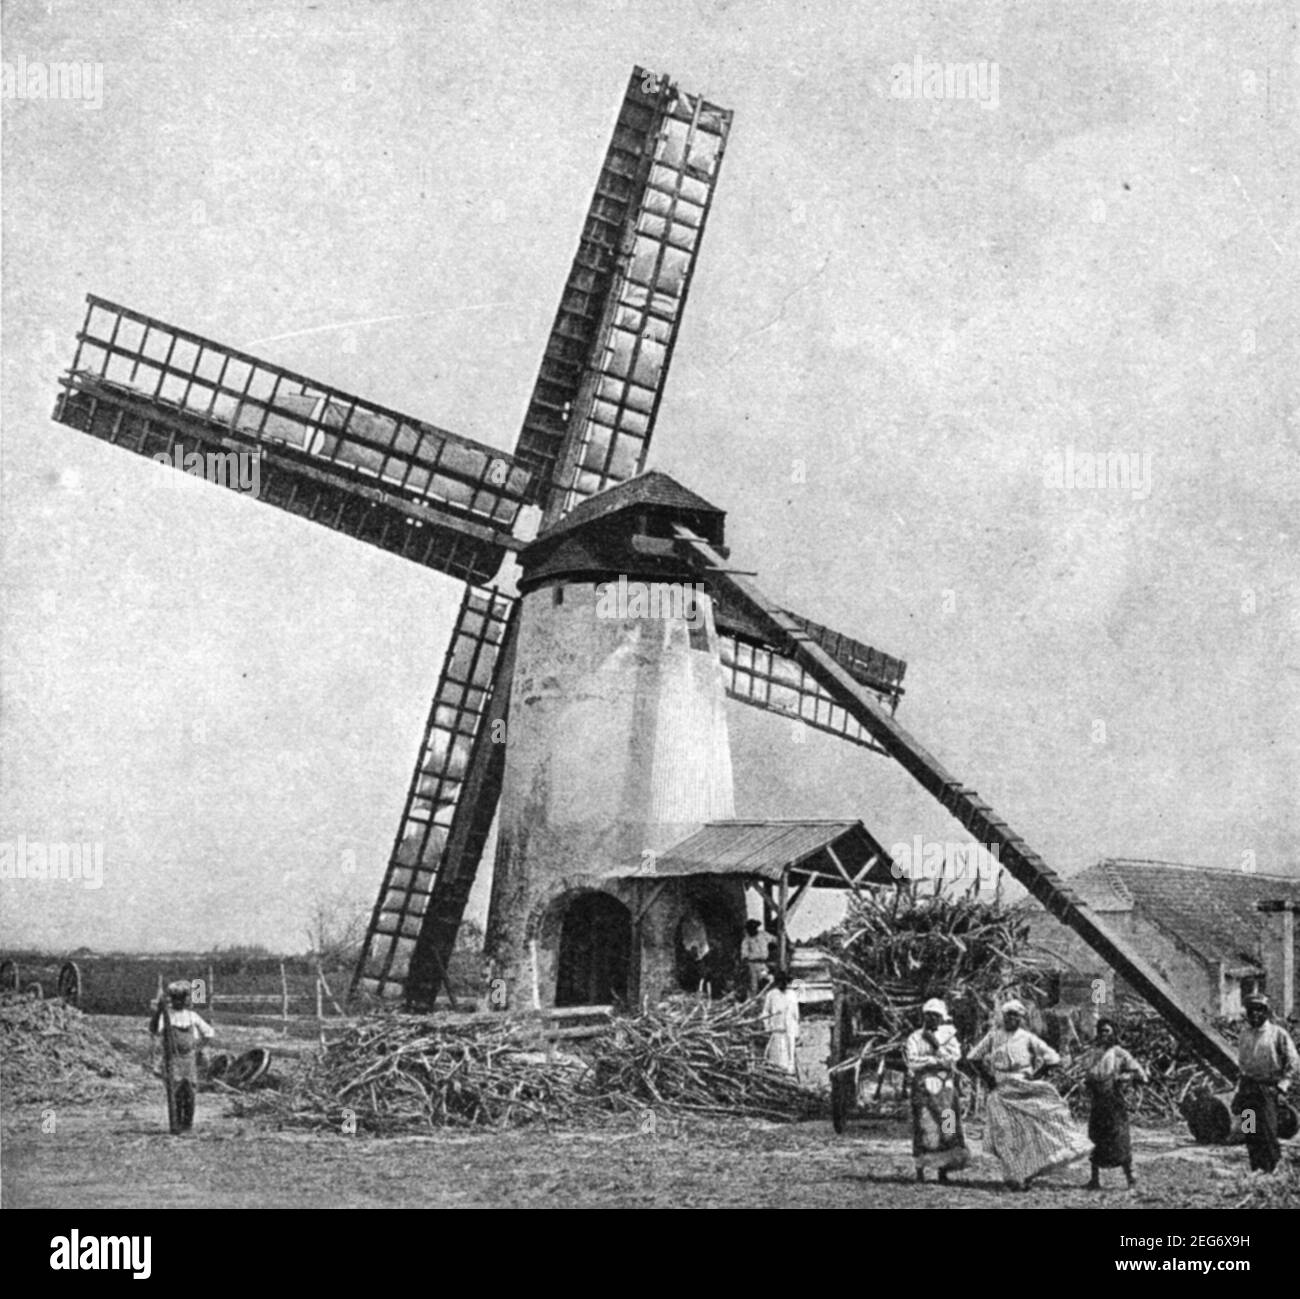 Photo du début du XXe siècle des hommes et des femmes de la Barbade qui travaillent avec un moulin à vent pour écraser la canne à sucre dans Les champs de canne à sucre de la Barbade vers le début des années 1900 pendant La période où l'île était une colonie britannique Banque D'Images